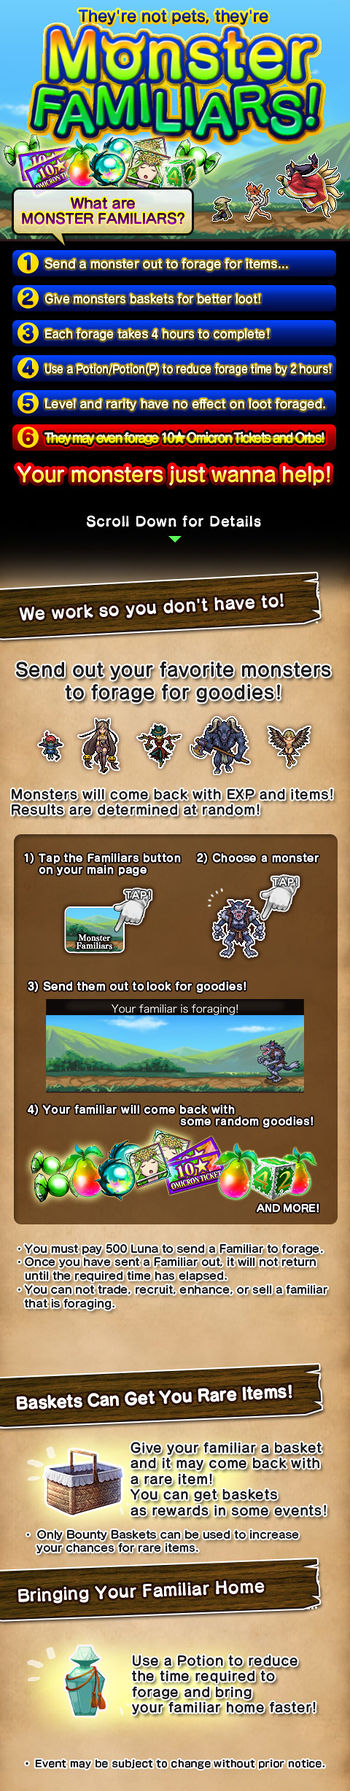 Monster Familiars 7 release.jpg